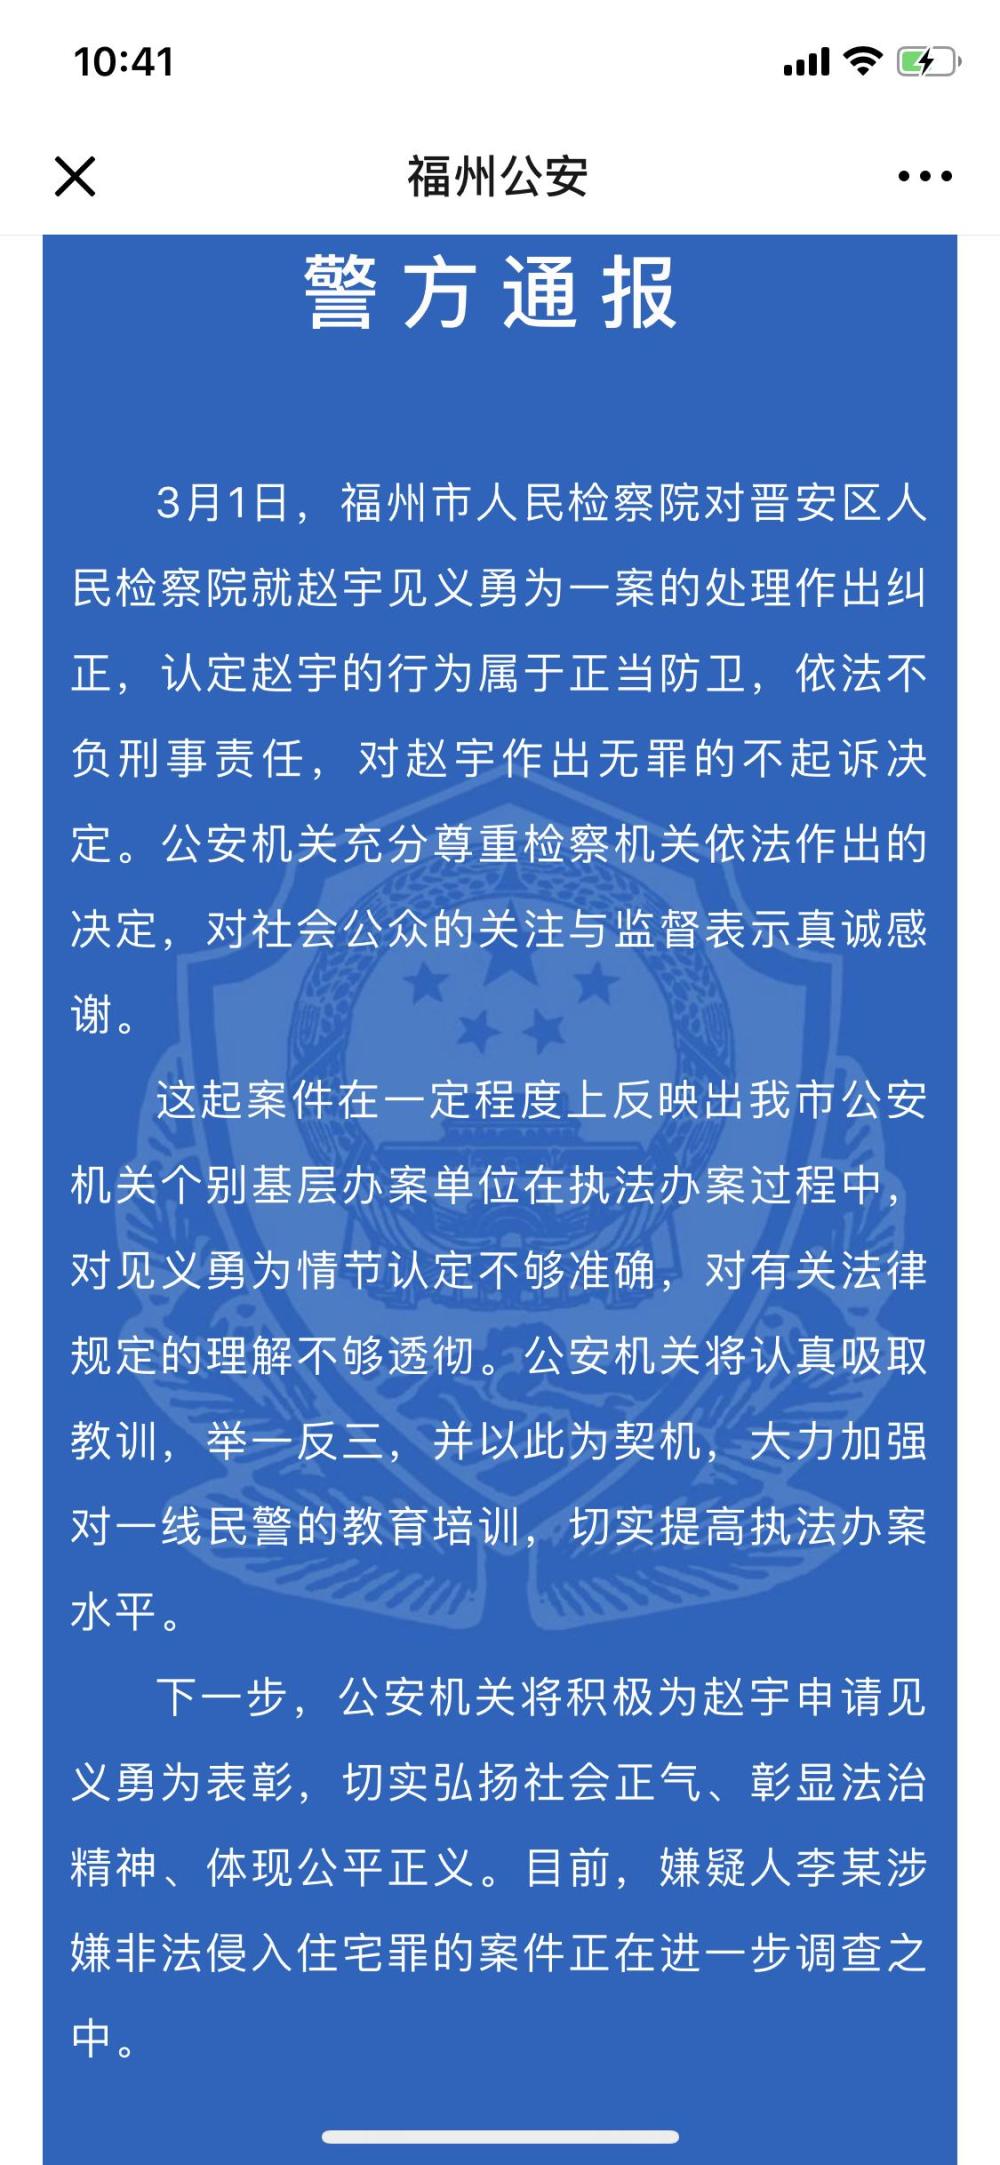 福州警方回应赵宇案:对见义勇为情节认定不够